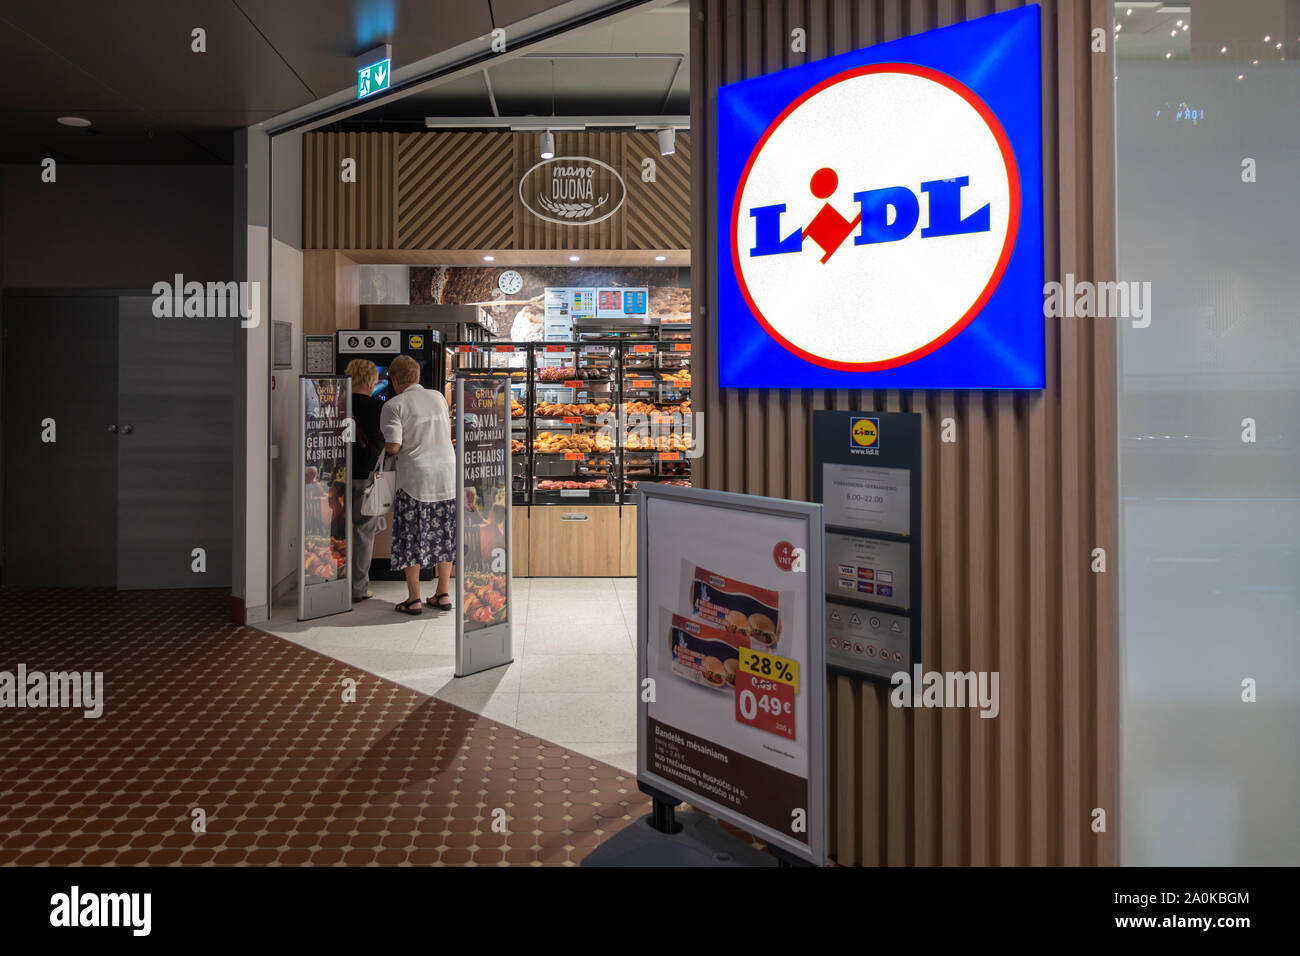 Vilnius, Lituanie - le 18 août 2019 : Entrée de nouveau magasin Lidl moderne à l'intérieur aller9 centre commercial de Vilnius, Lituanie Banque D'Images